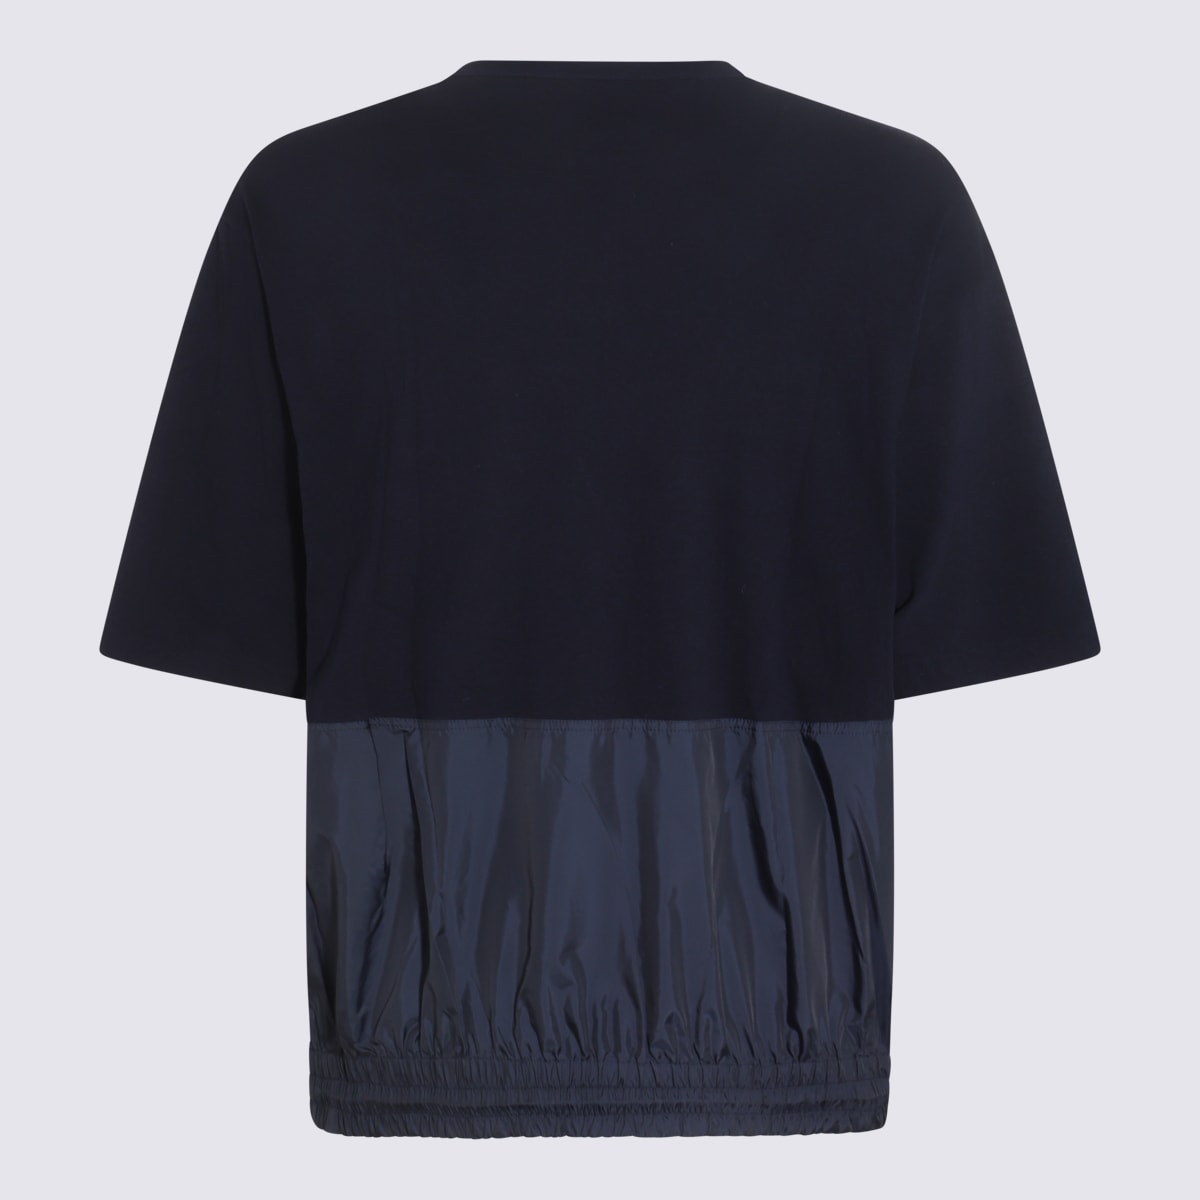 Shop Undercover Navy Blue Cotton T-shirt